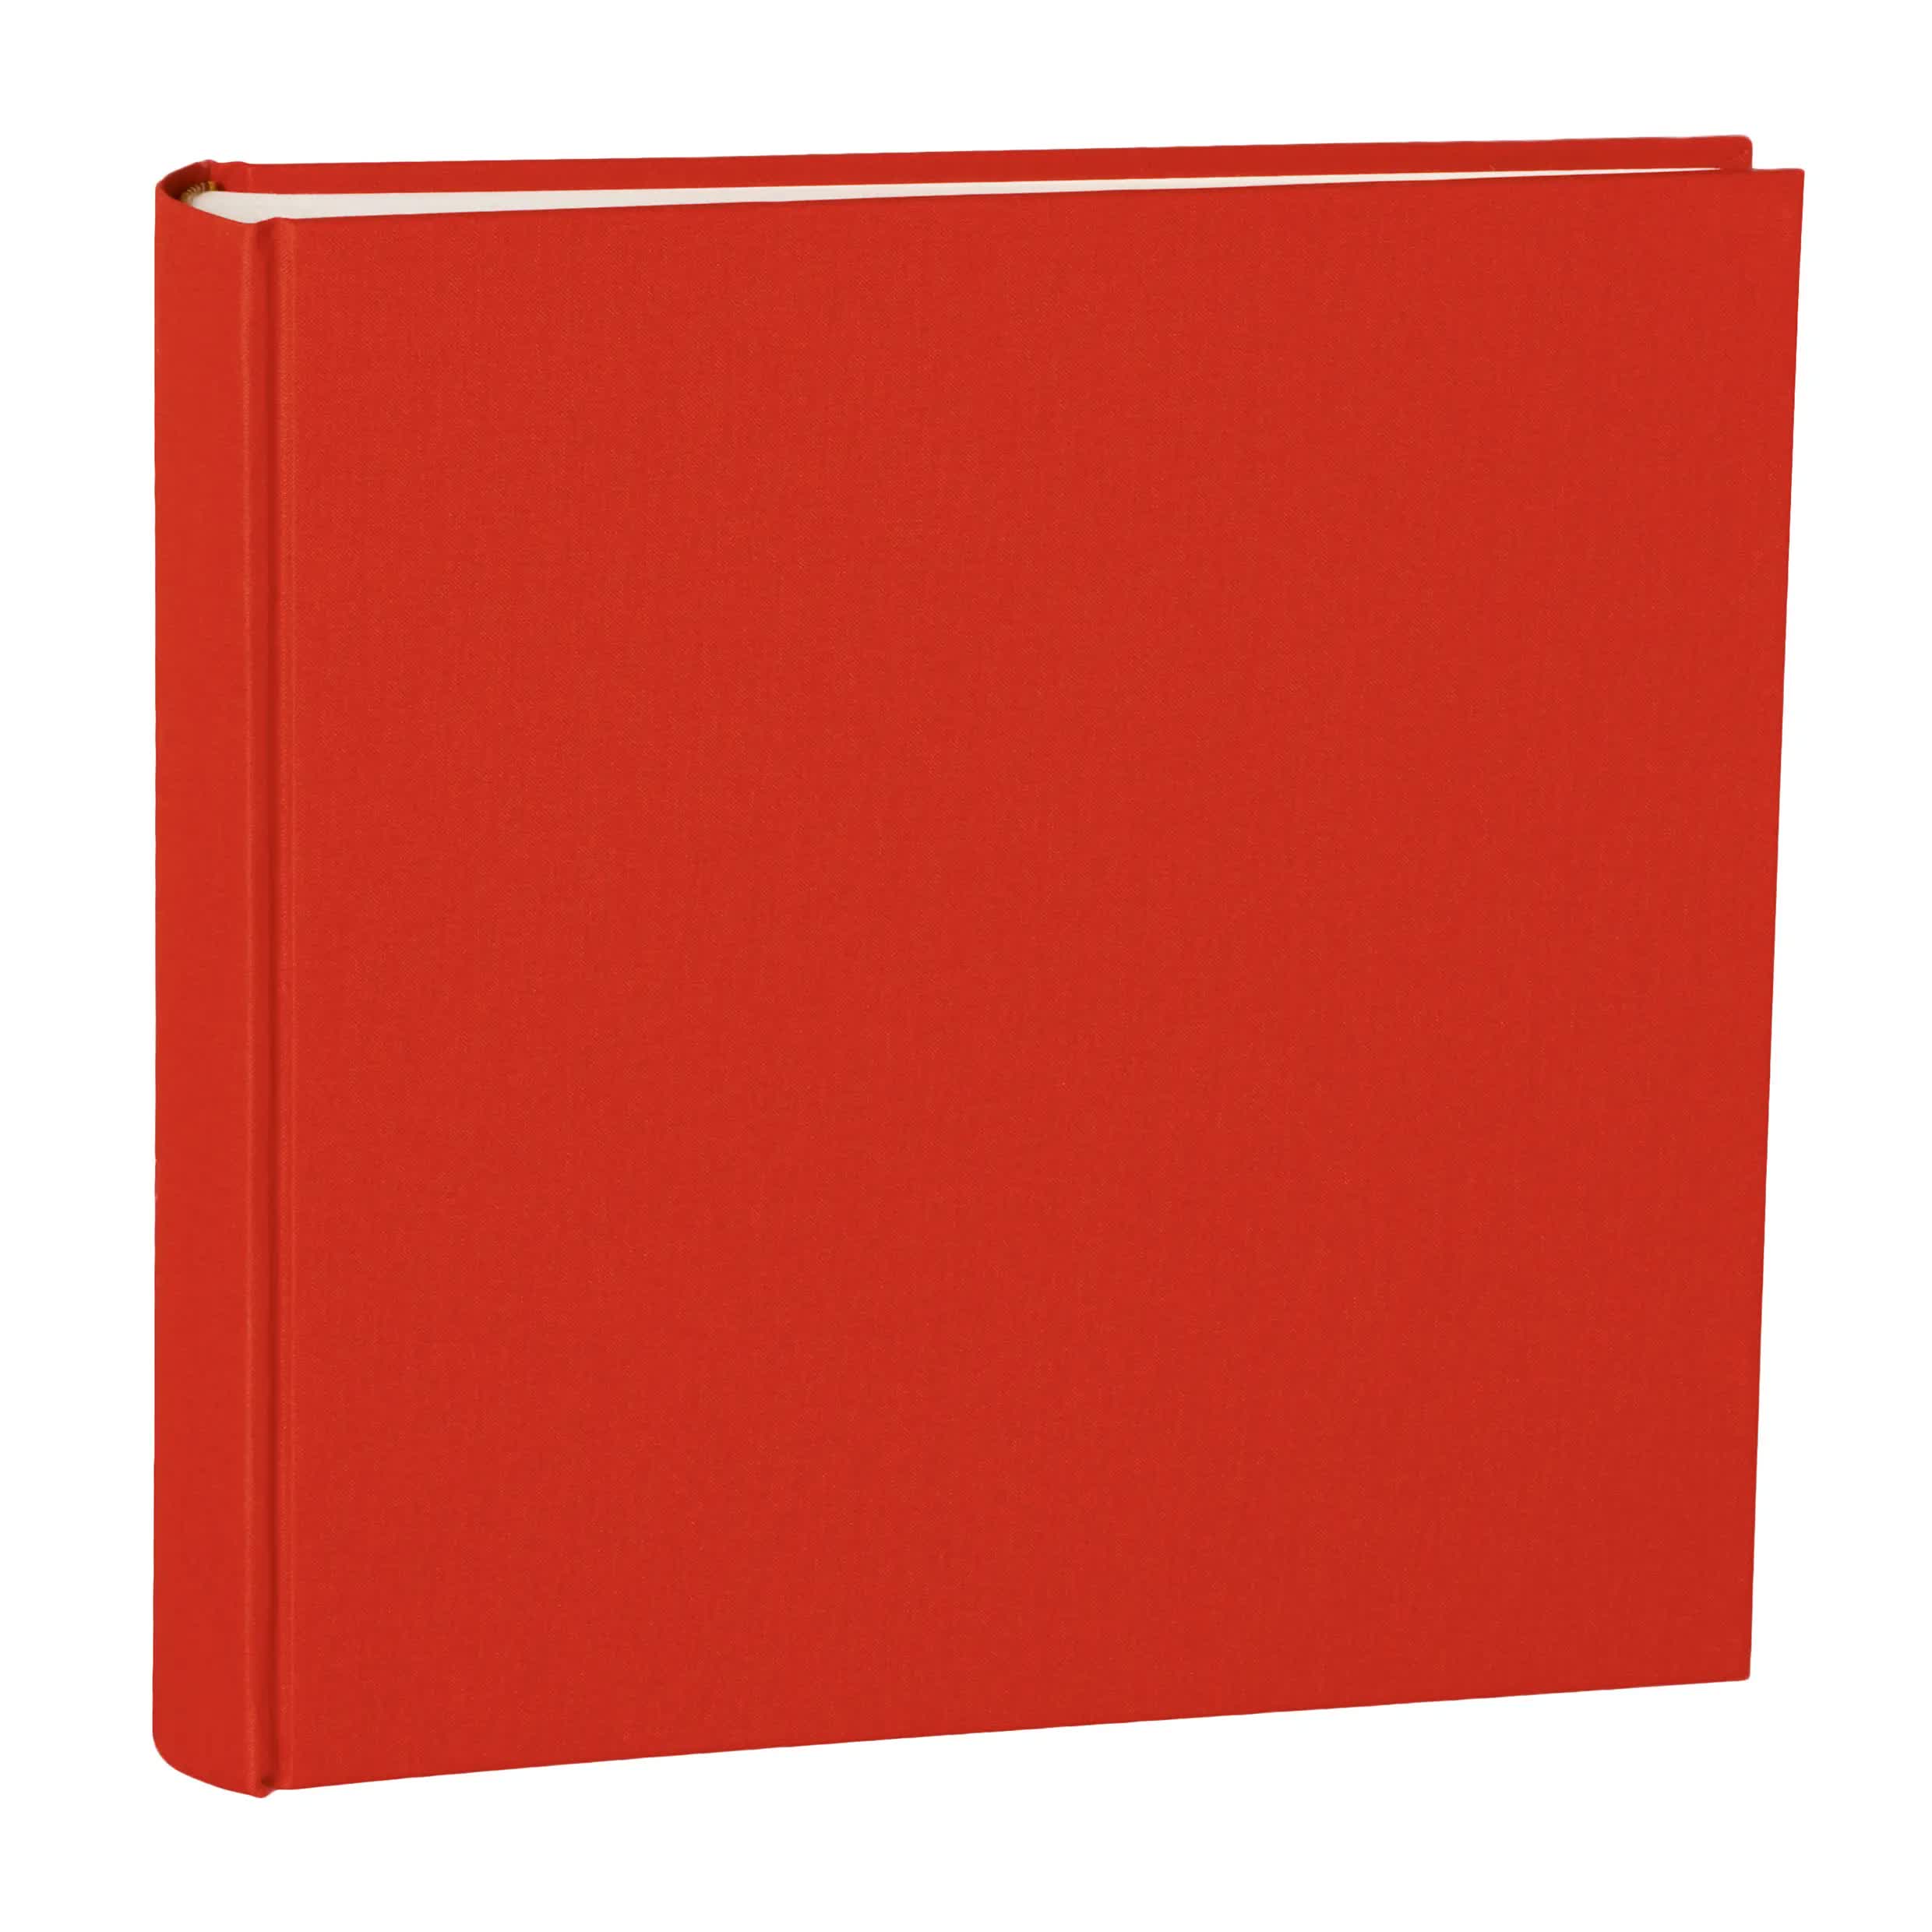 Album photo,A4 red 20 sheets--Album photo en cuir auto adhésif, A4, haute  qualité, commercial, maison, avec couverture intérieure en